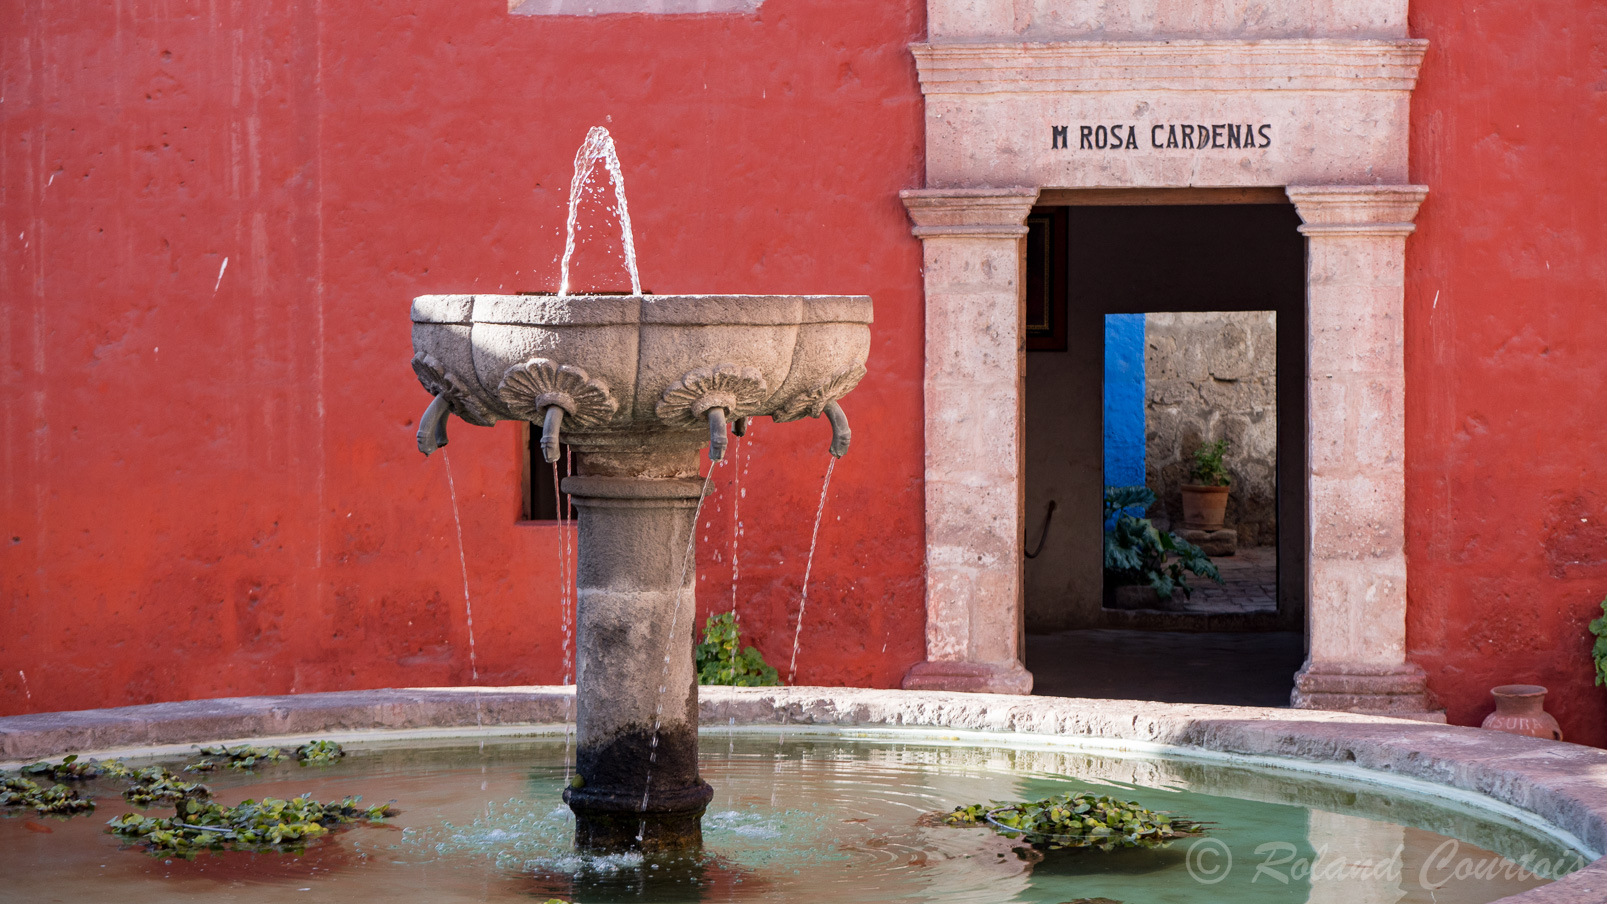 Le couvent de Santa Catalina est une véritable petite ville dans la ville, avec ses ruelles bordées de maisonnettes colorées d'ocre, de bleu, de blanc, ses places et ses fontaines : un décor qui rappelle la lointaine Andalousie. Il fut fondé sous Philippe II, en 1579. C'est un lieu de calme et de sérénité, en plein cœur d'Arequipa.